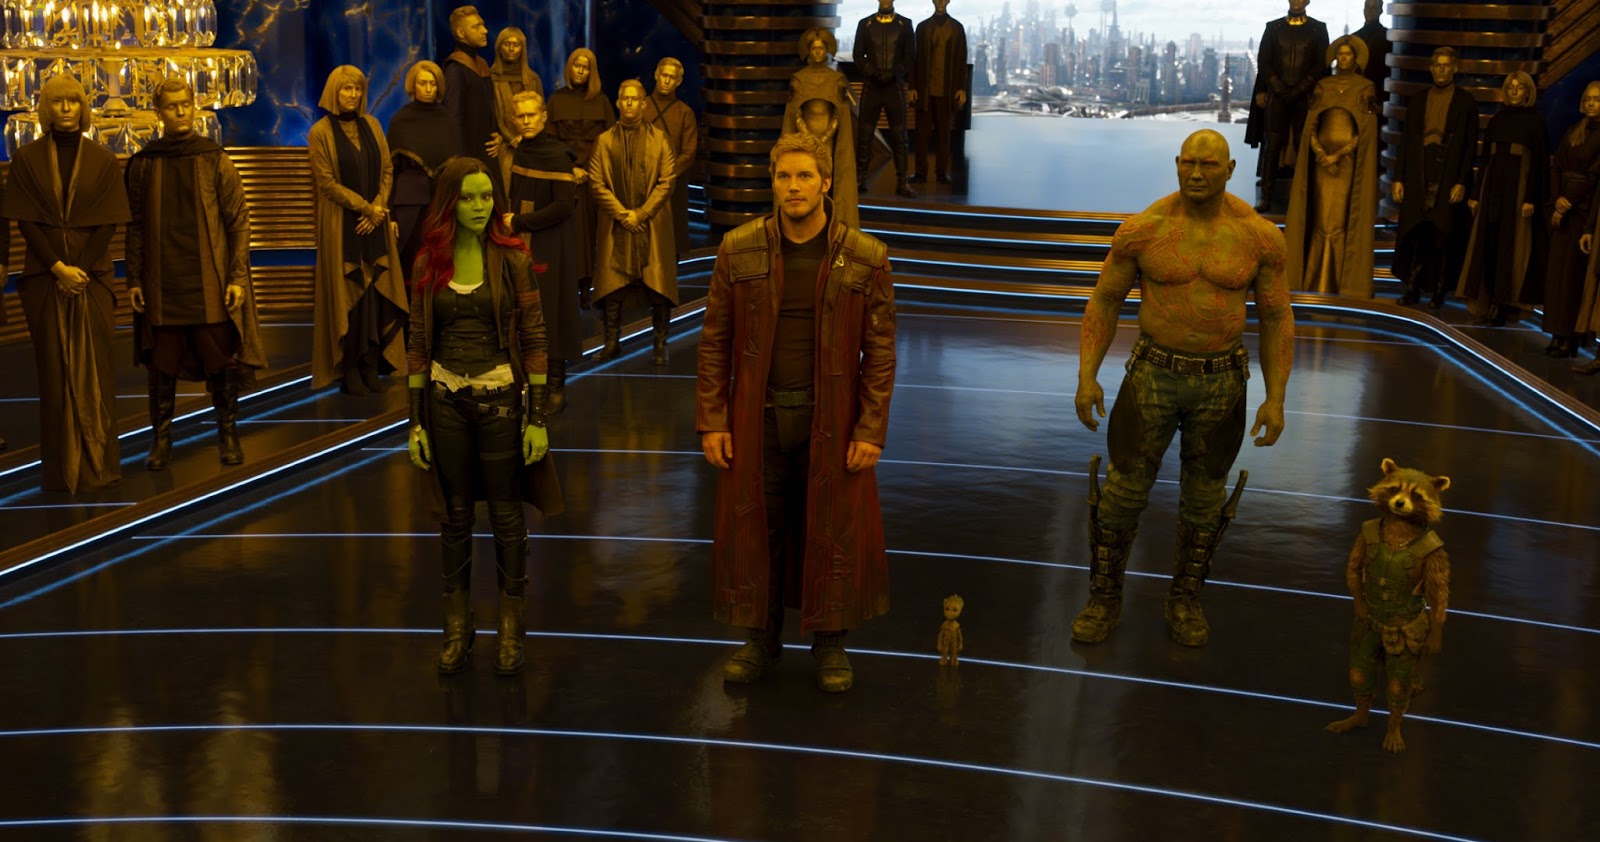 รีวิว Guardians of the Galaxy Vol. 3 ภาคต่อ ที่ทำคะแนนดีเกินคาด - UFABET